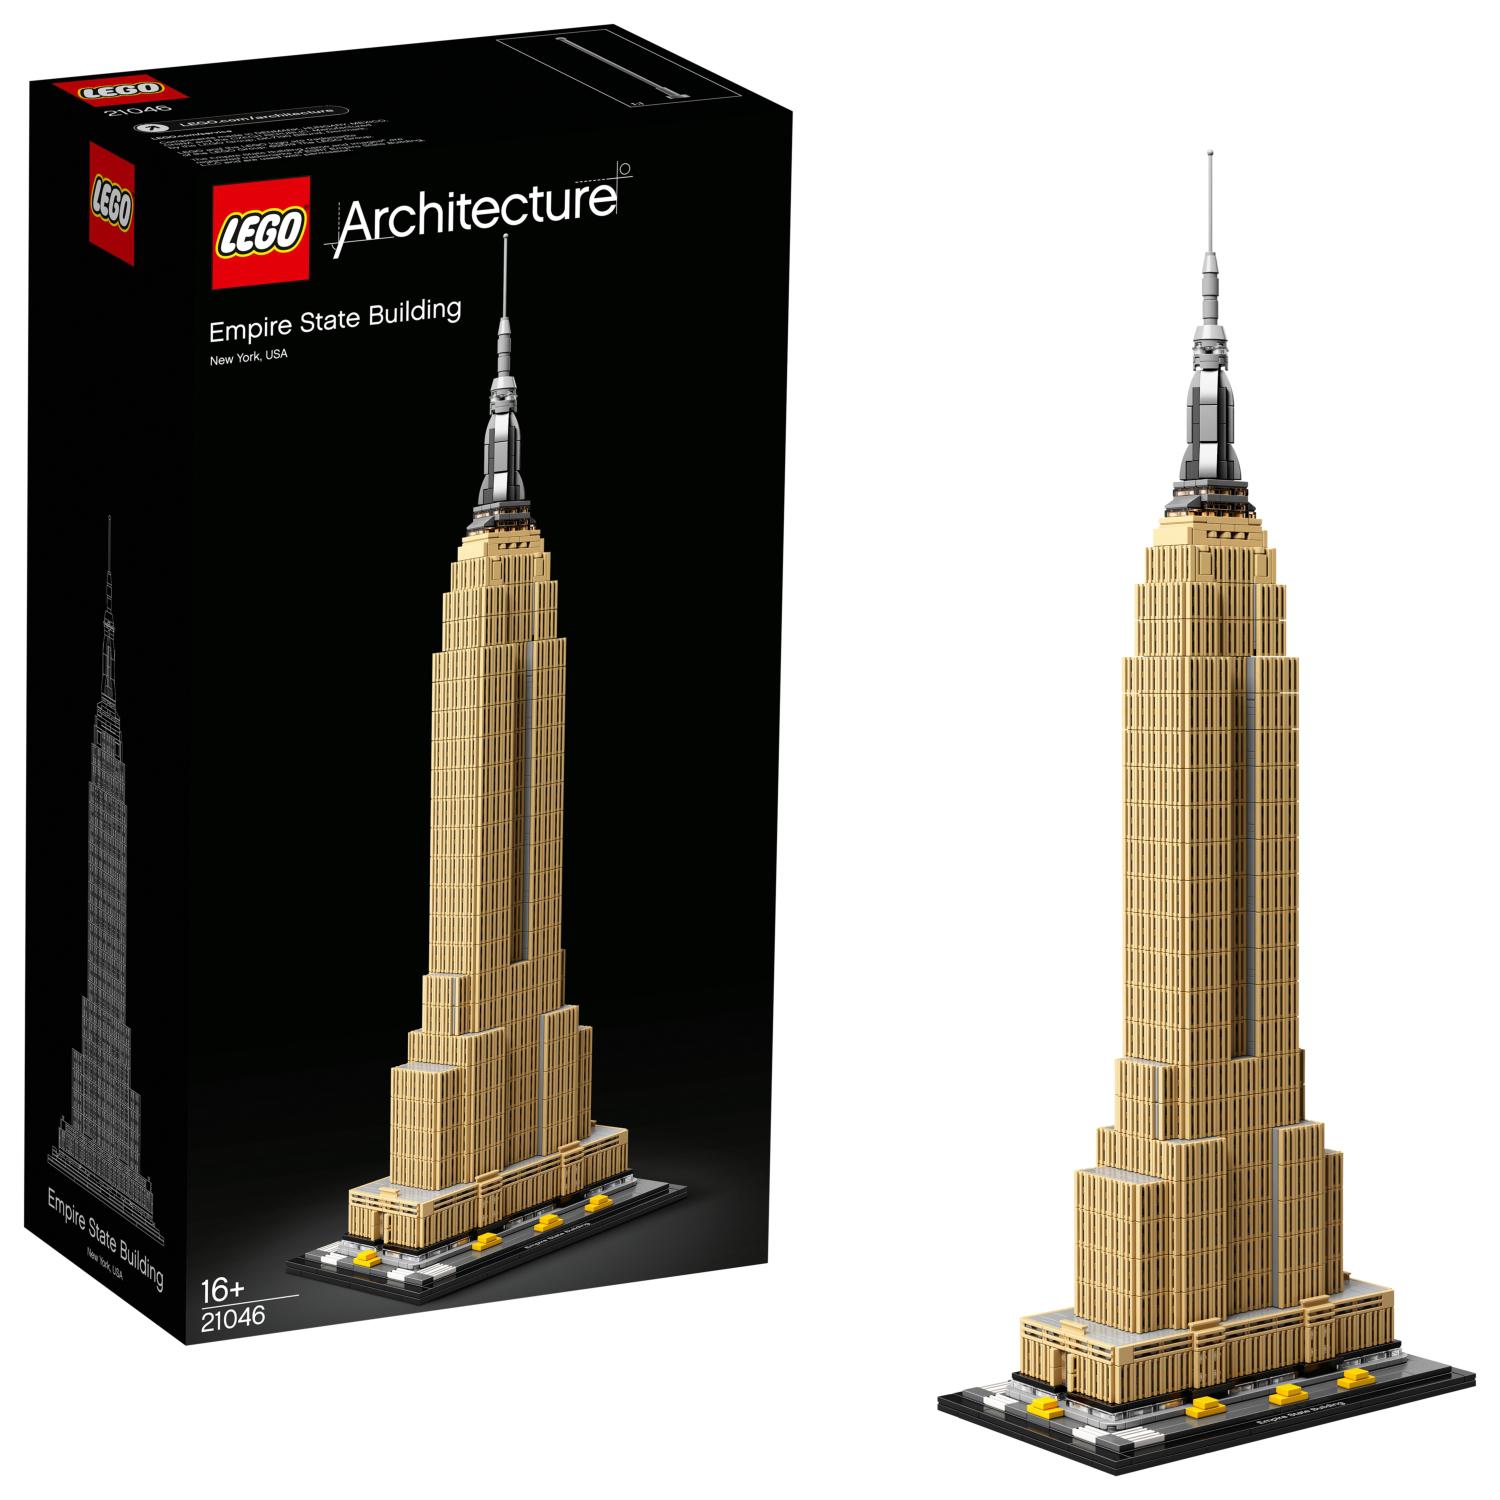 ! Reise Souvenir,Neu Empire State Building New York City 17 cm Modell 